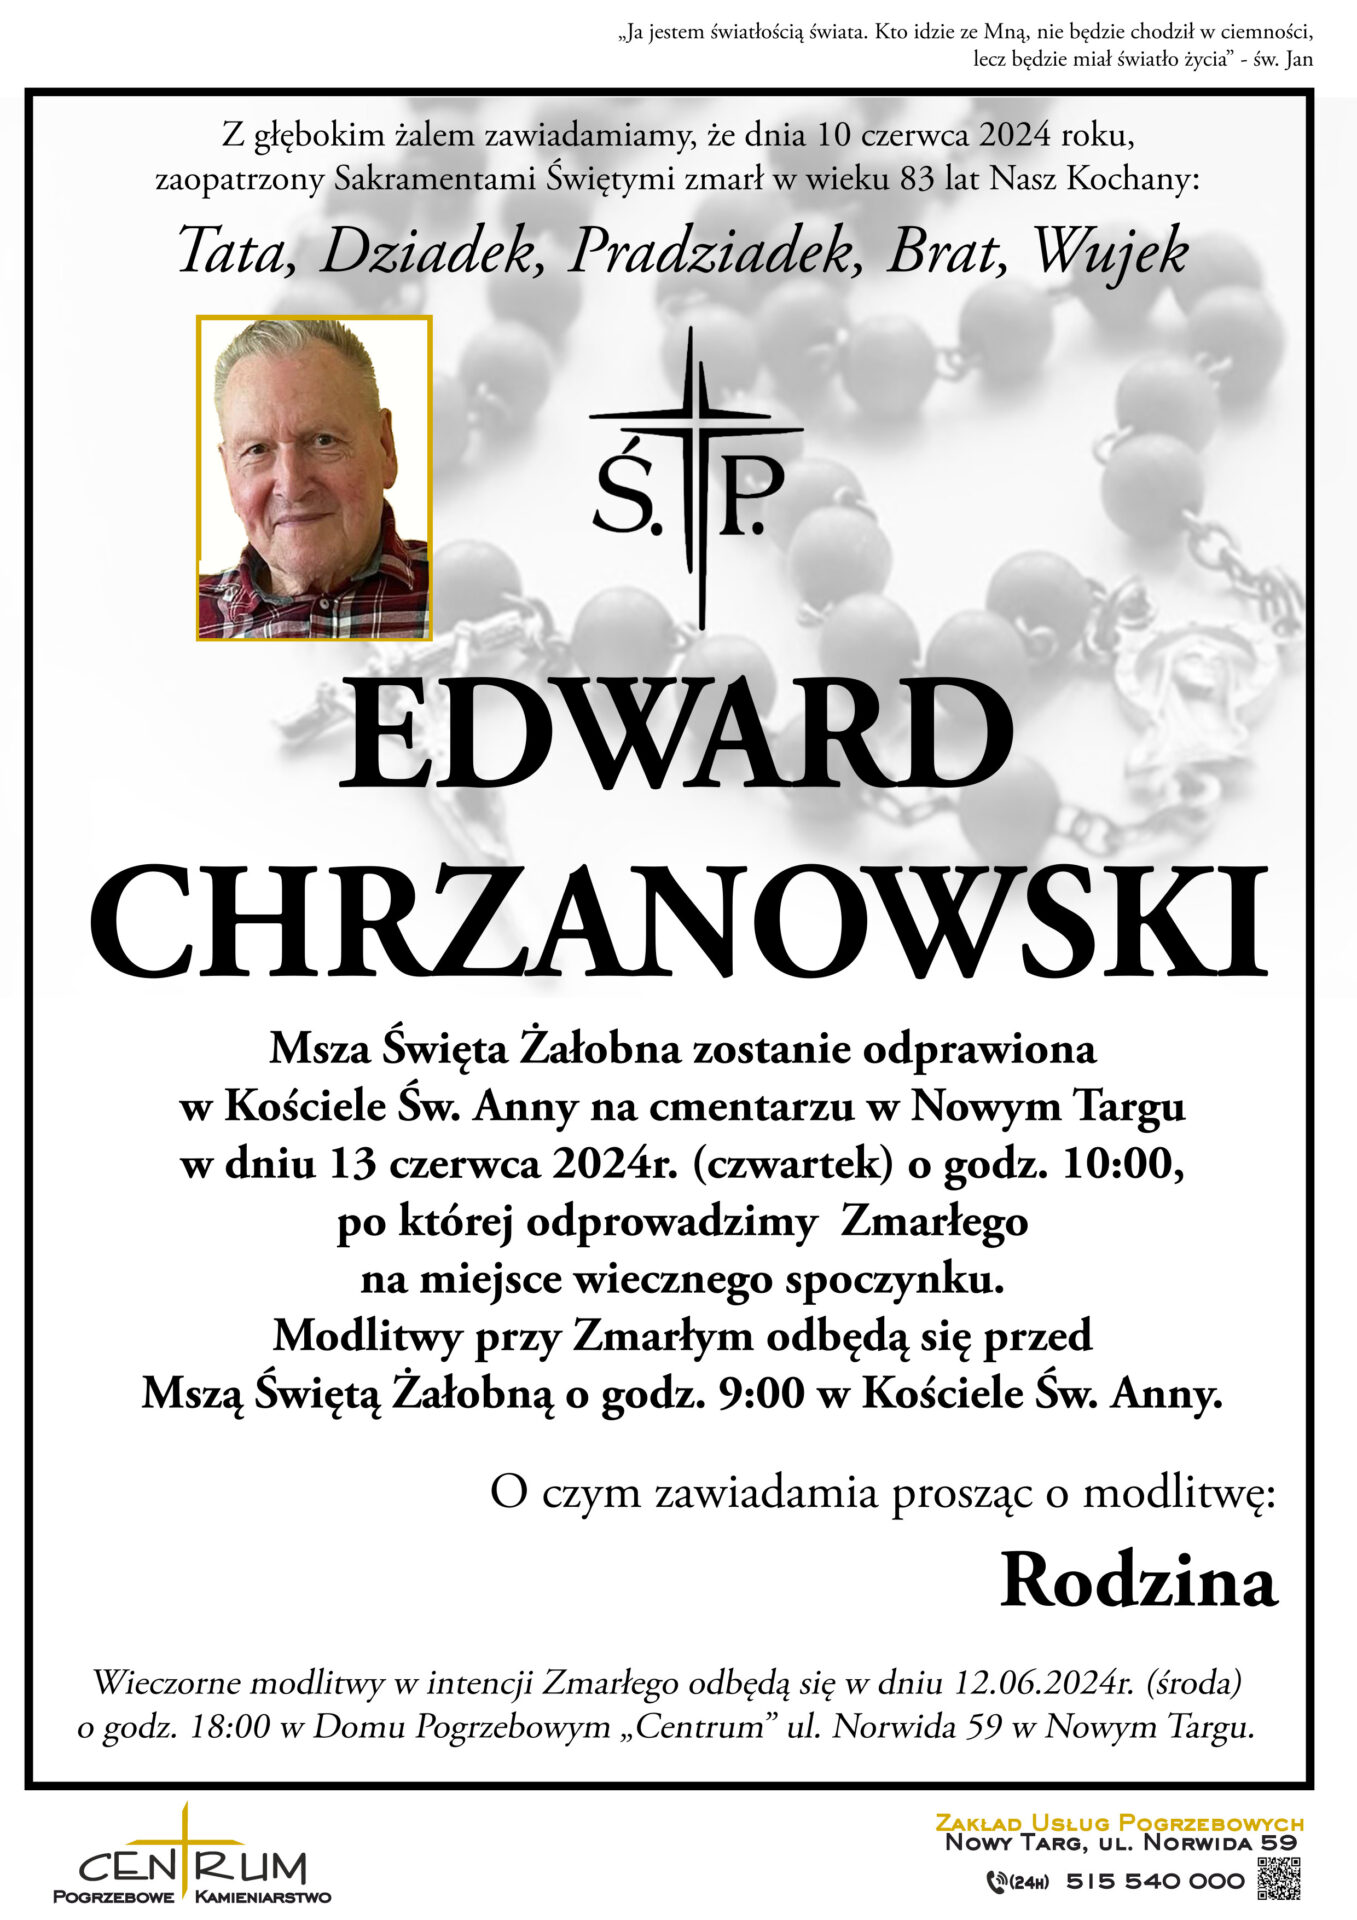 Edward Chrzanowski